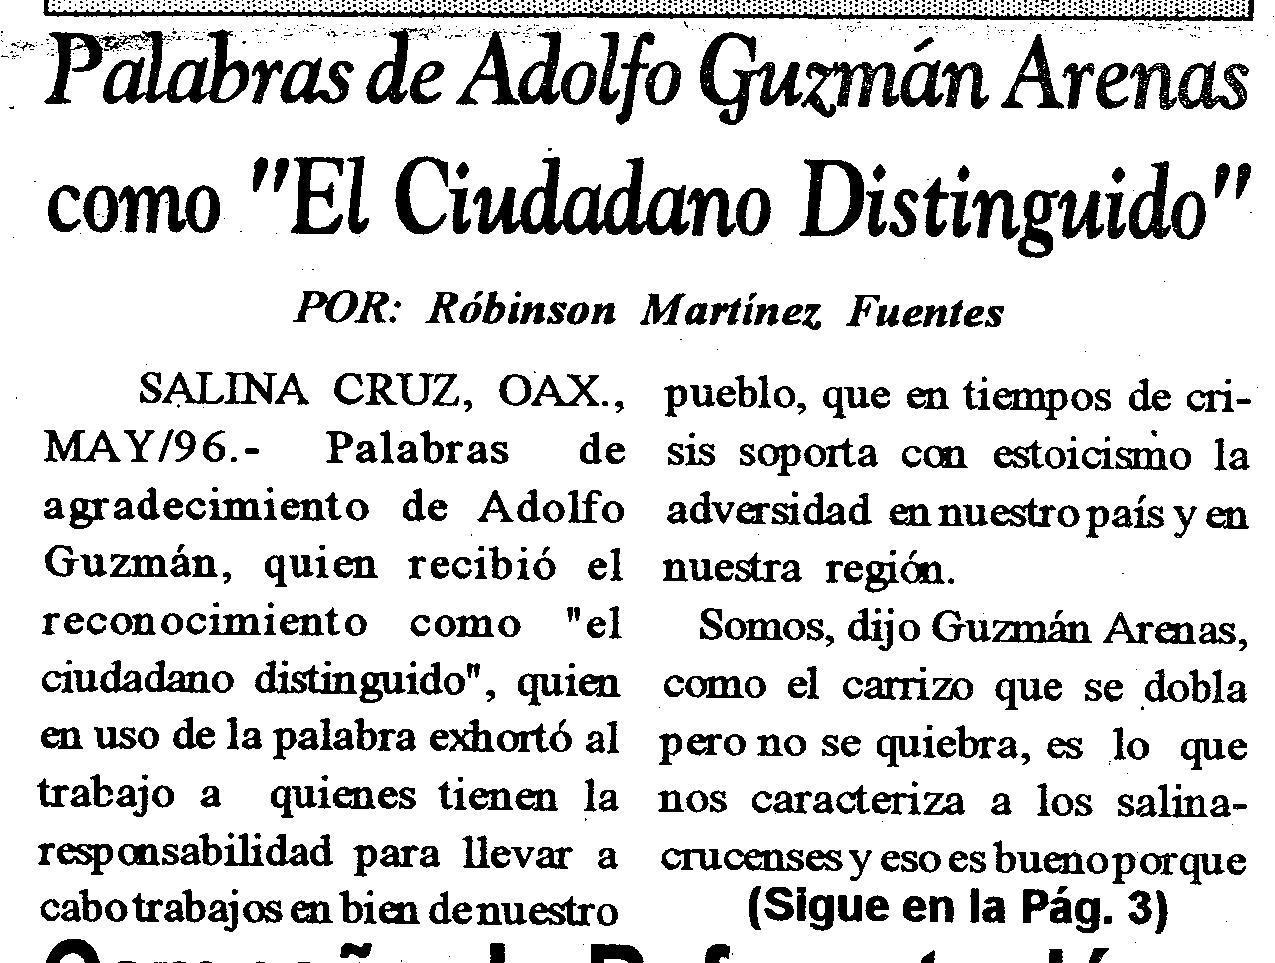 Palabras de A. Guzmán cuando es nombrado "Ciudadano Distinguido" en Oaxaca, 1996